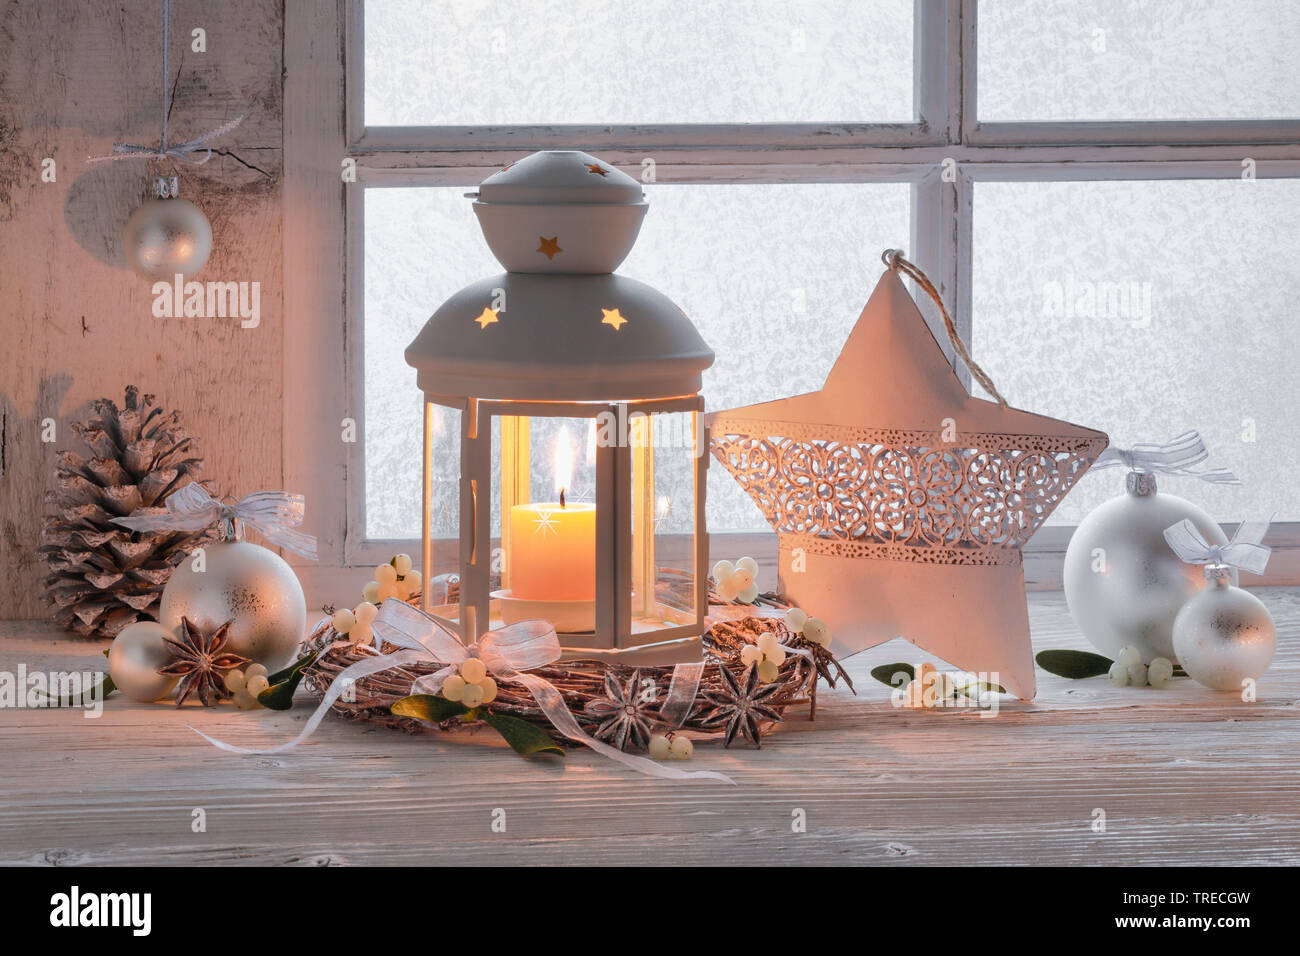 Laterne Mit Weihnachten Dekoration Auf Einem Felsvorsprung Schweiz Stockfotografie Alamy